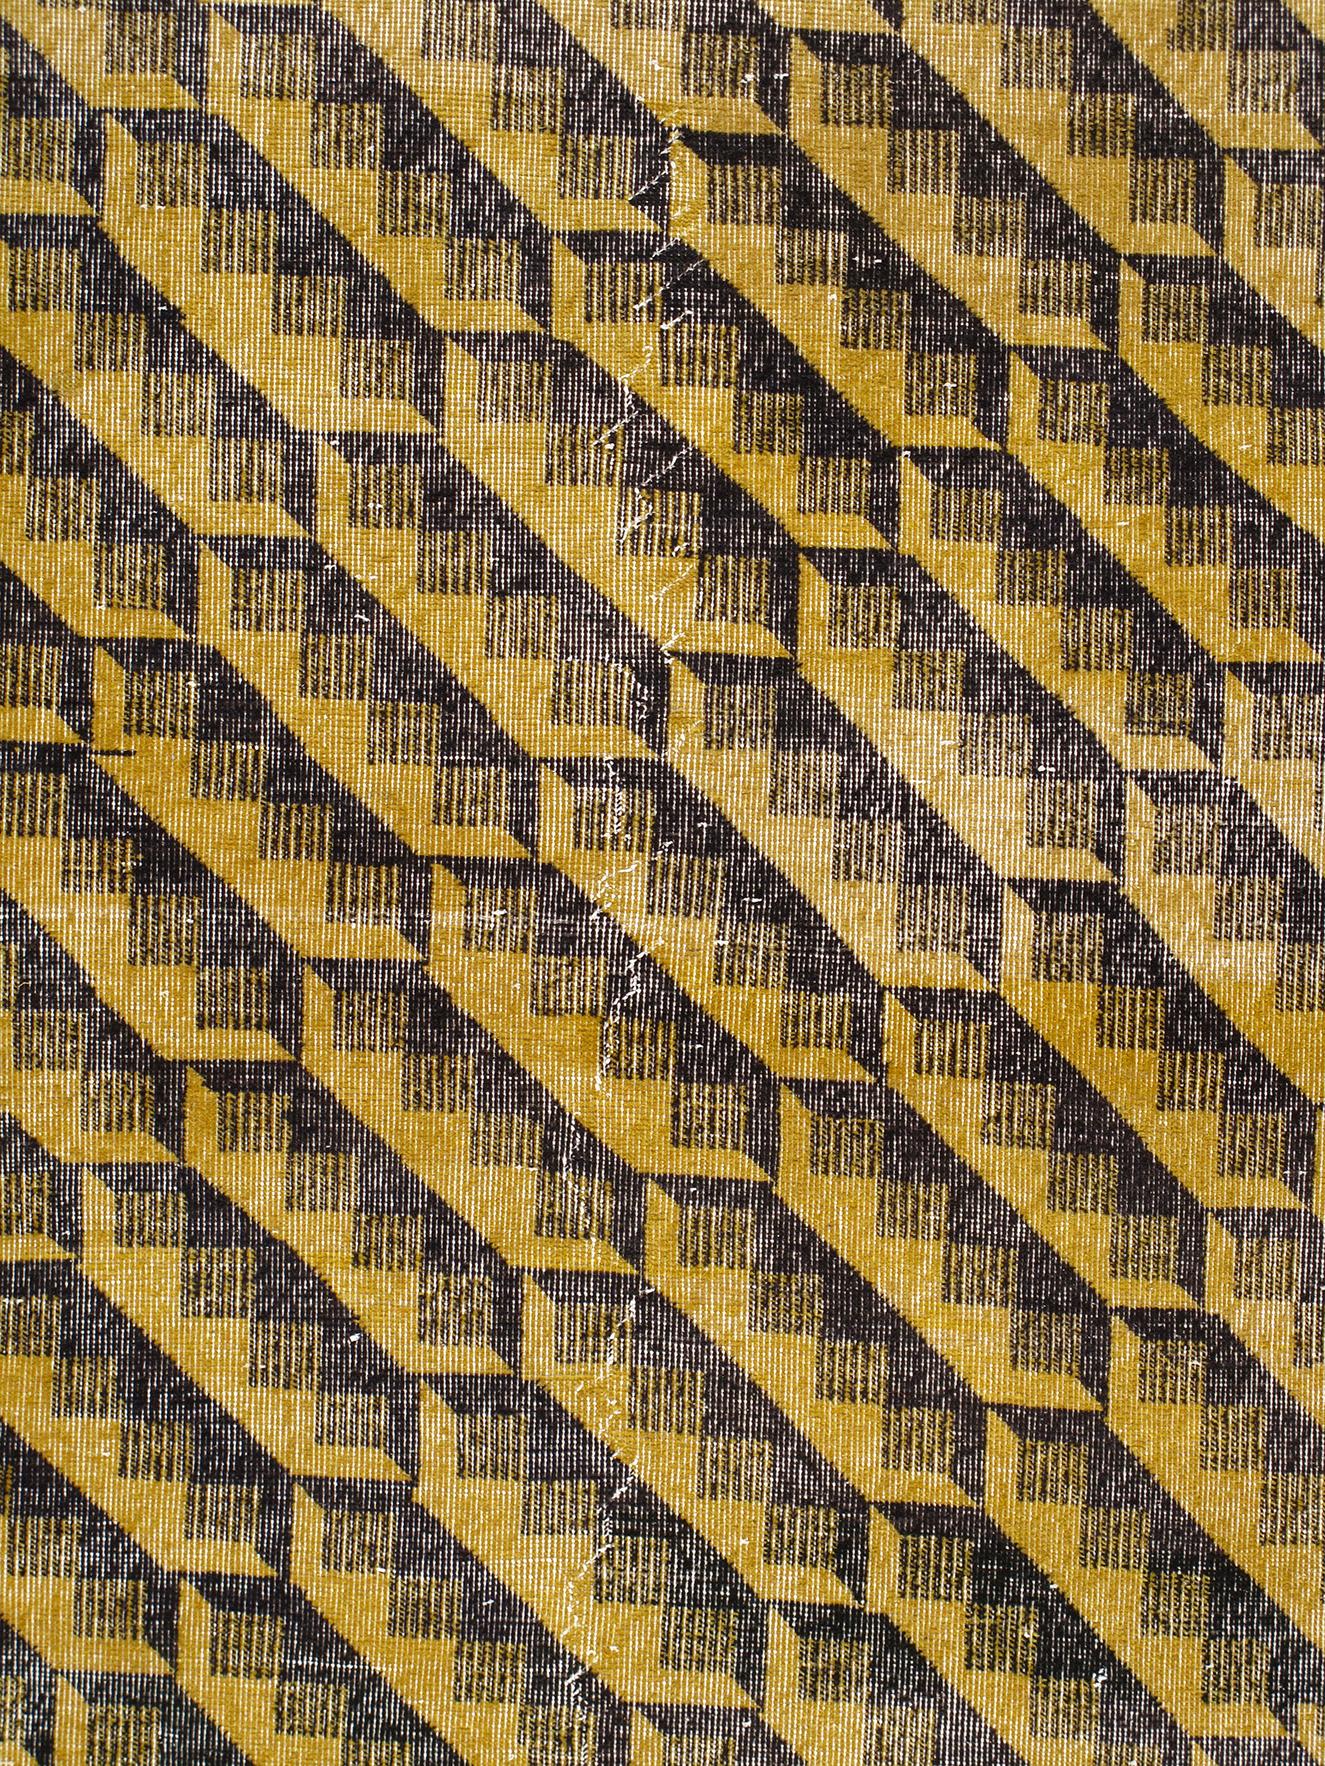 Dieser Vintage-Teppich im Art-Déco-Stil wurde um die Mitte des 20. Jahrhunderts in der Türkei handgefertigt. Es ist im Stil von Zeki Muren gehalten, einem multidisziplinären türkischen Künstler, der für seine kühnen, geometrischen und skurrilen